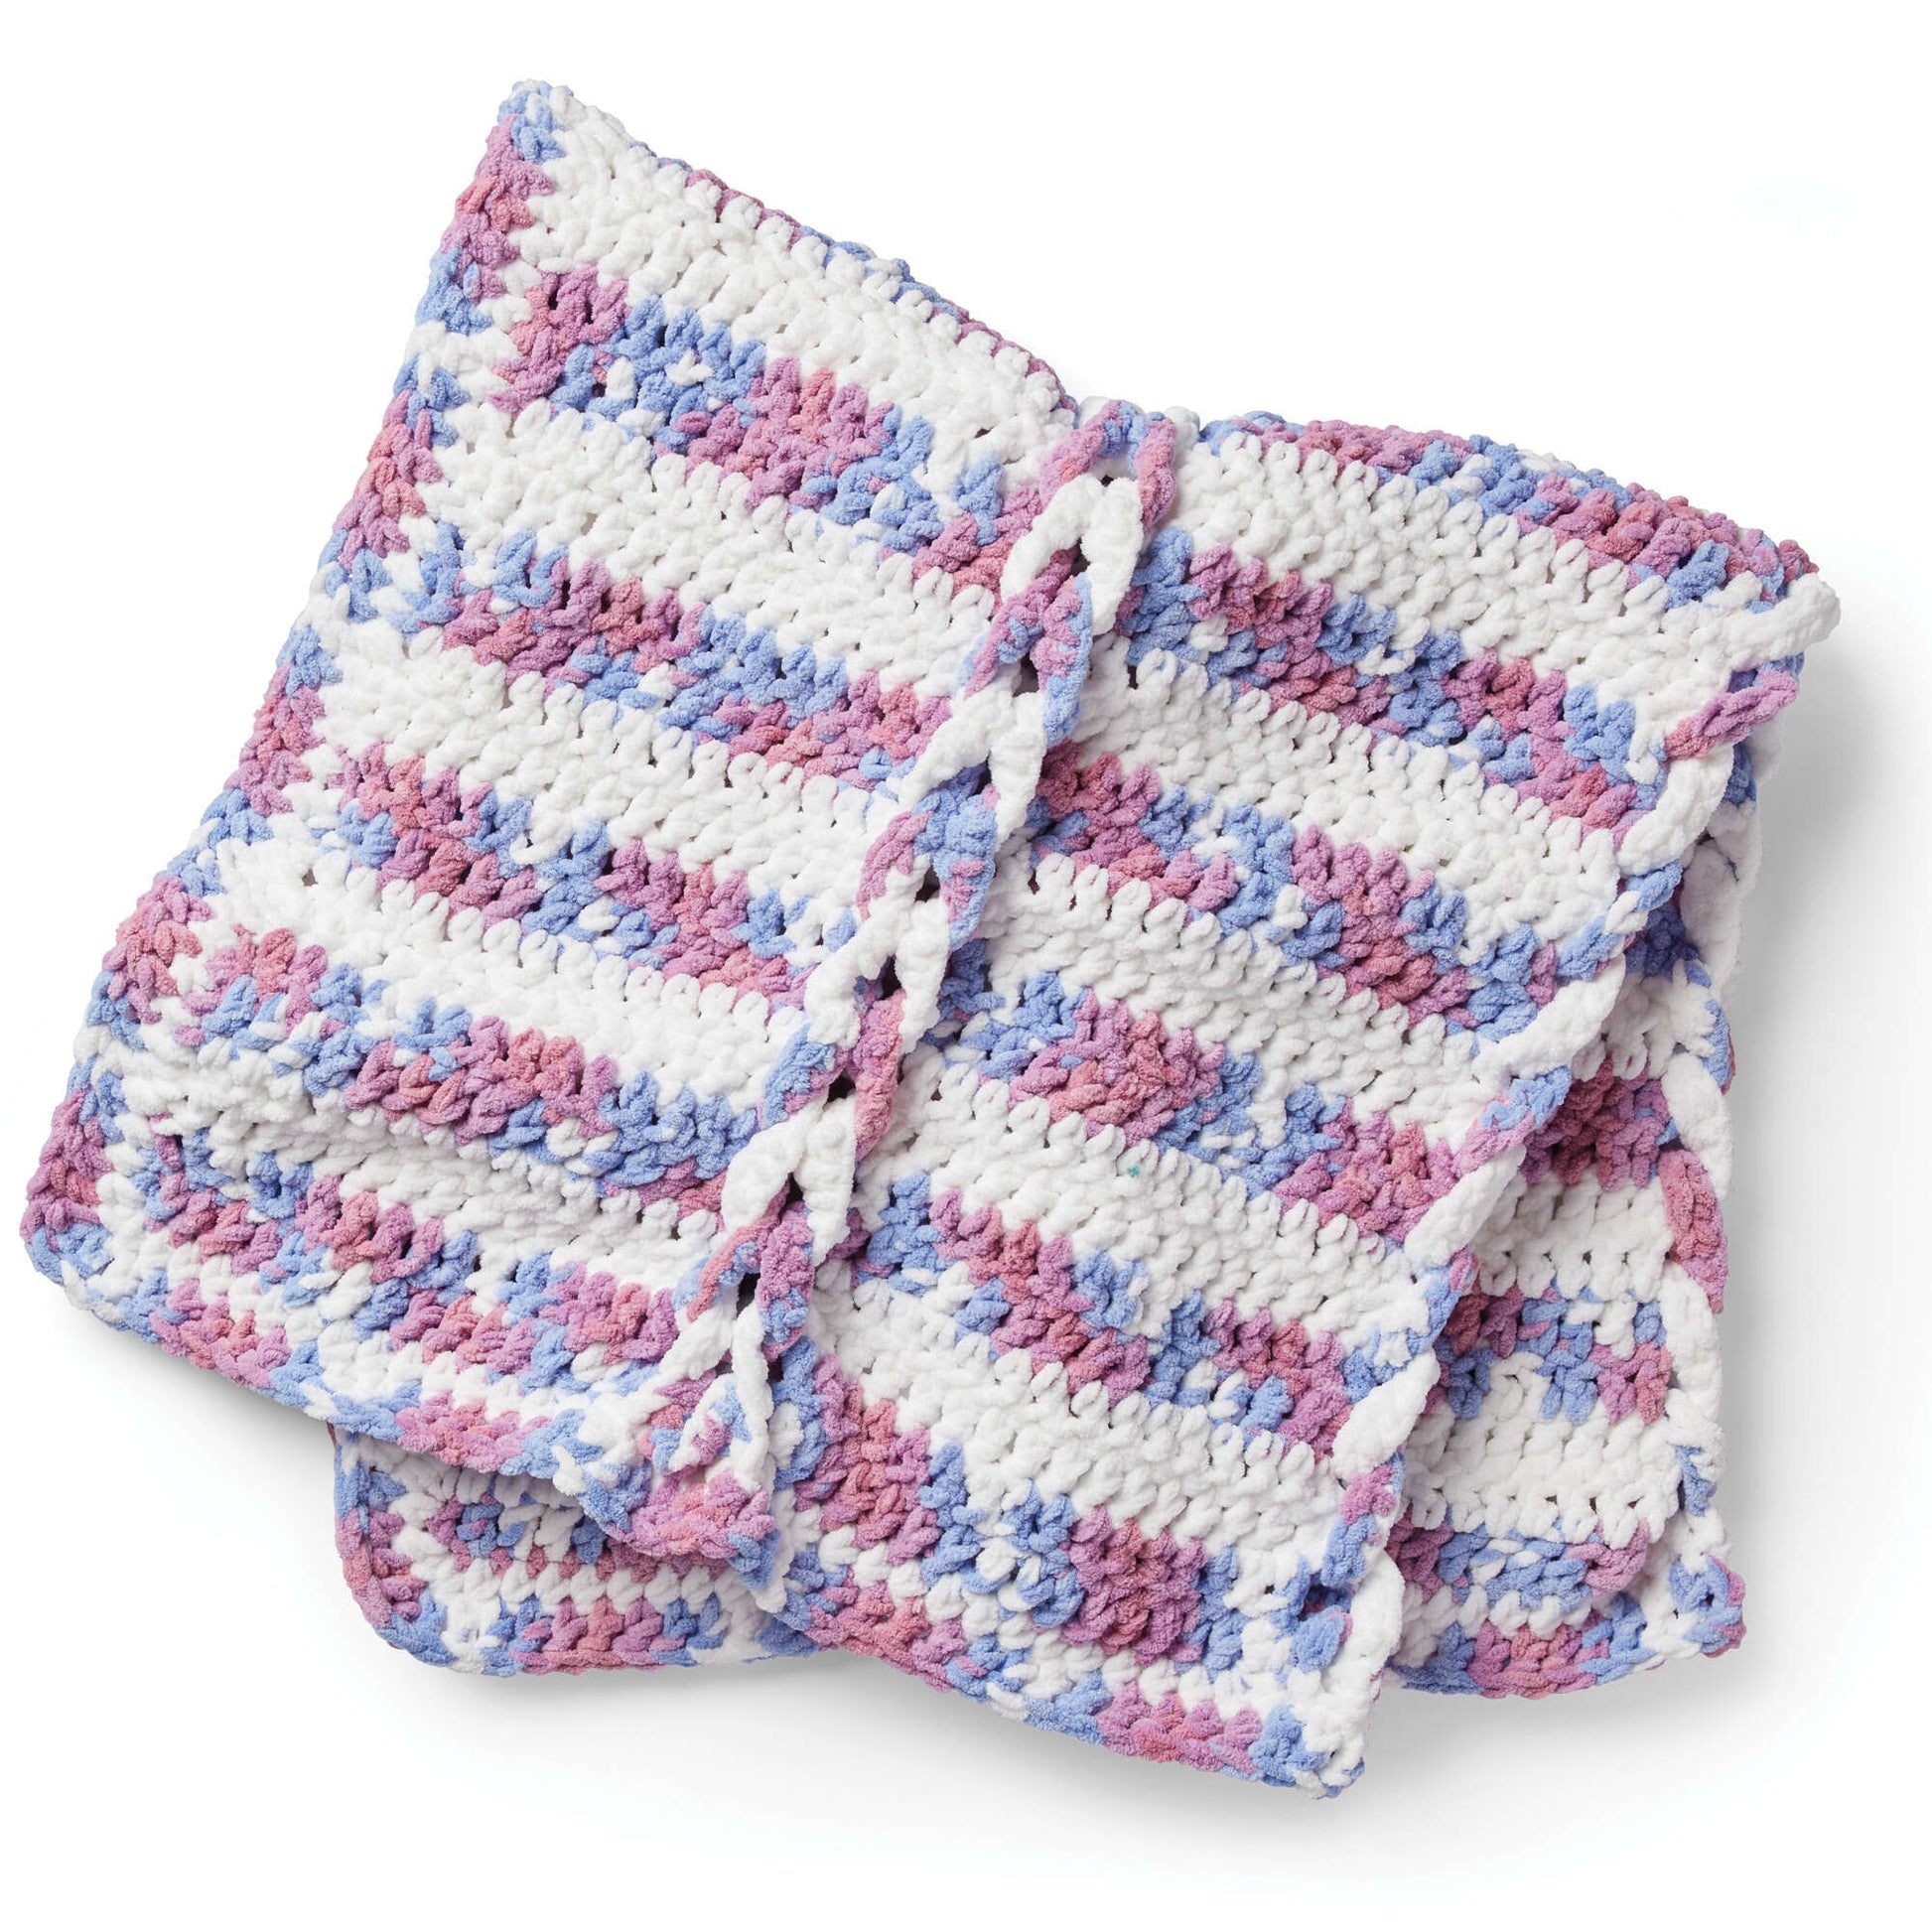 Bernat Faux Braid Crochet Baby Blanket Pattern